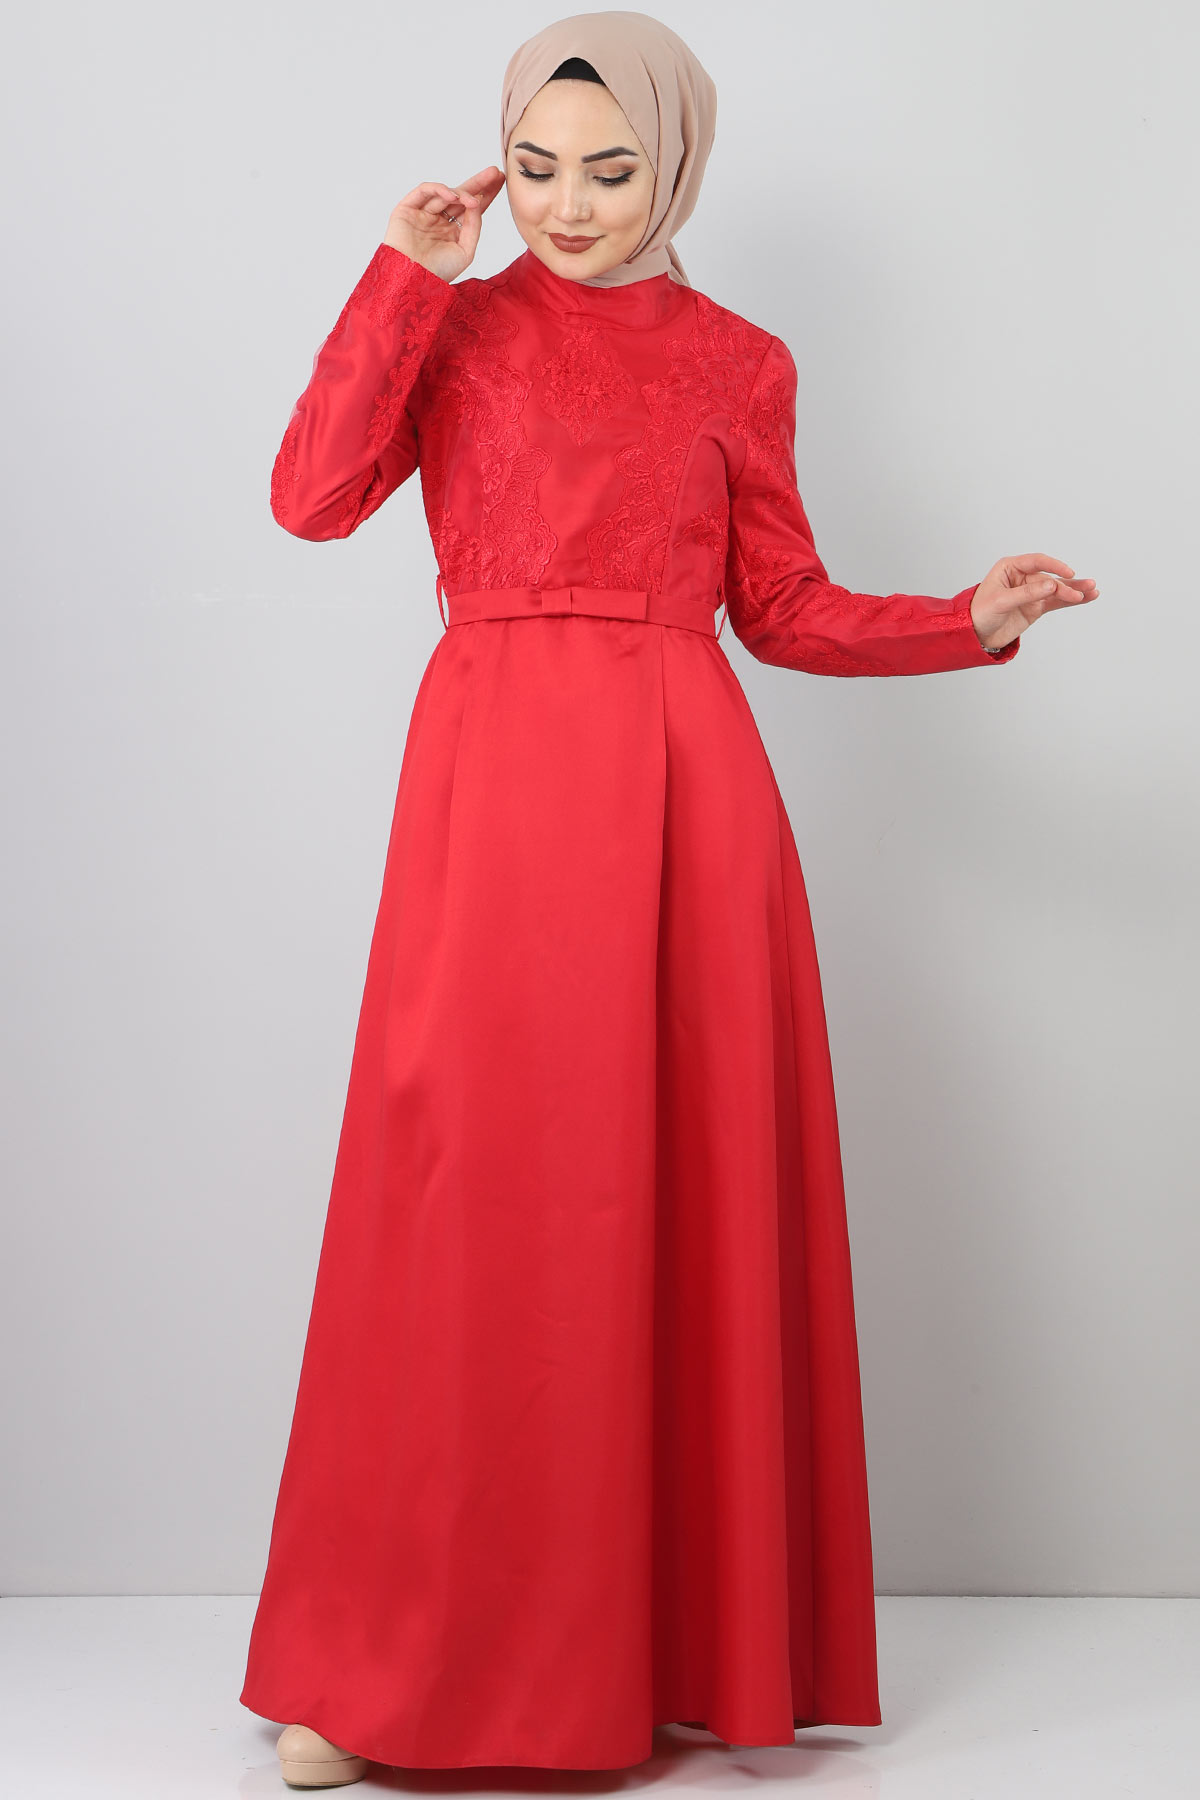 Tesettür Dünyası - Sultan Evening Dress TSD8723 Red